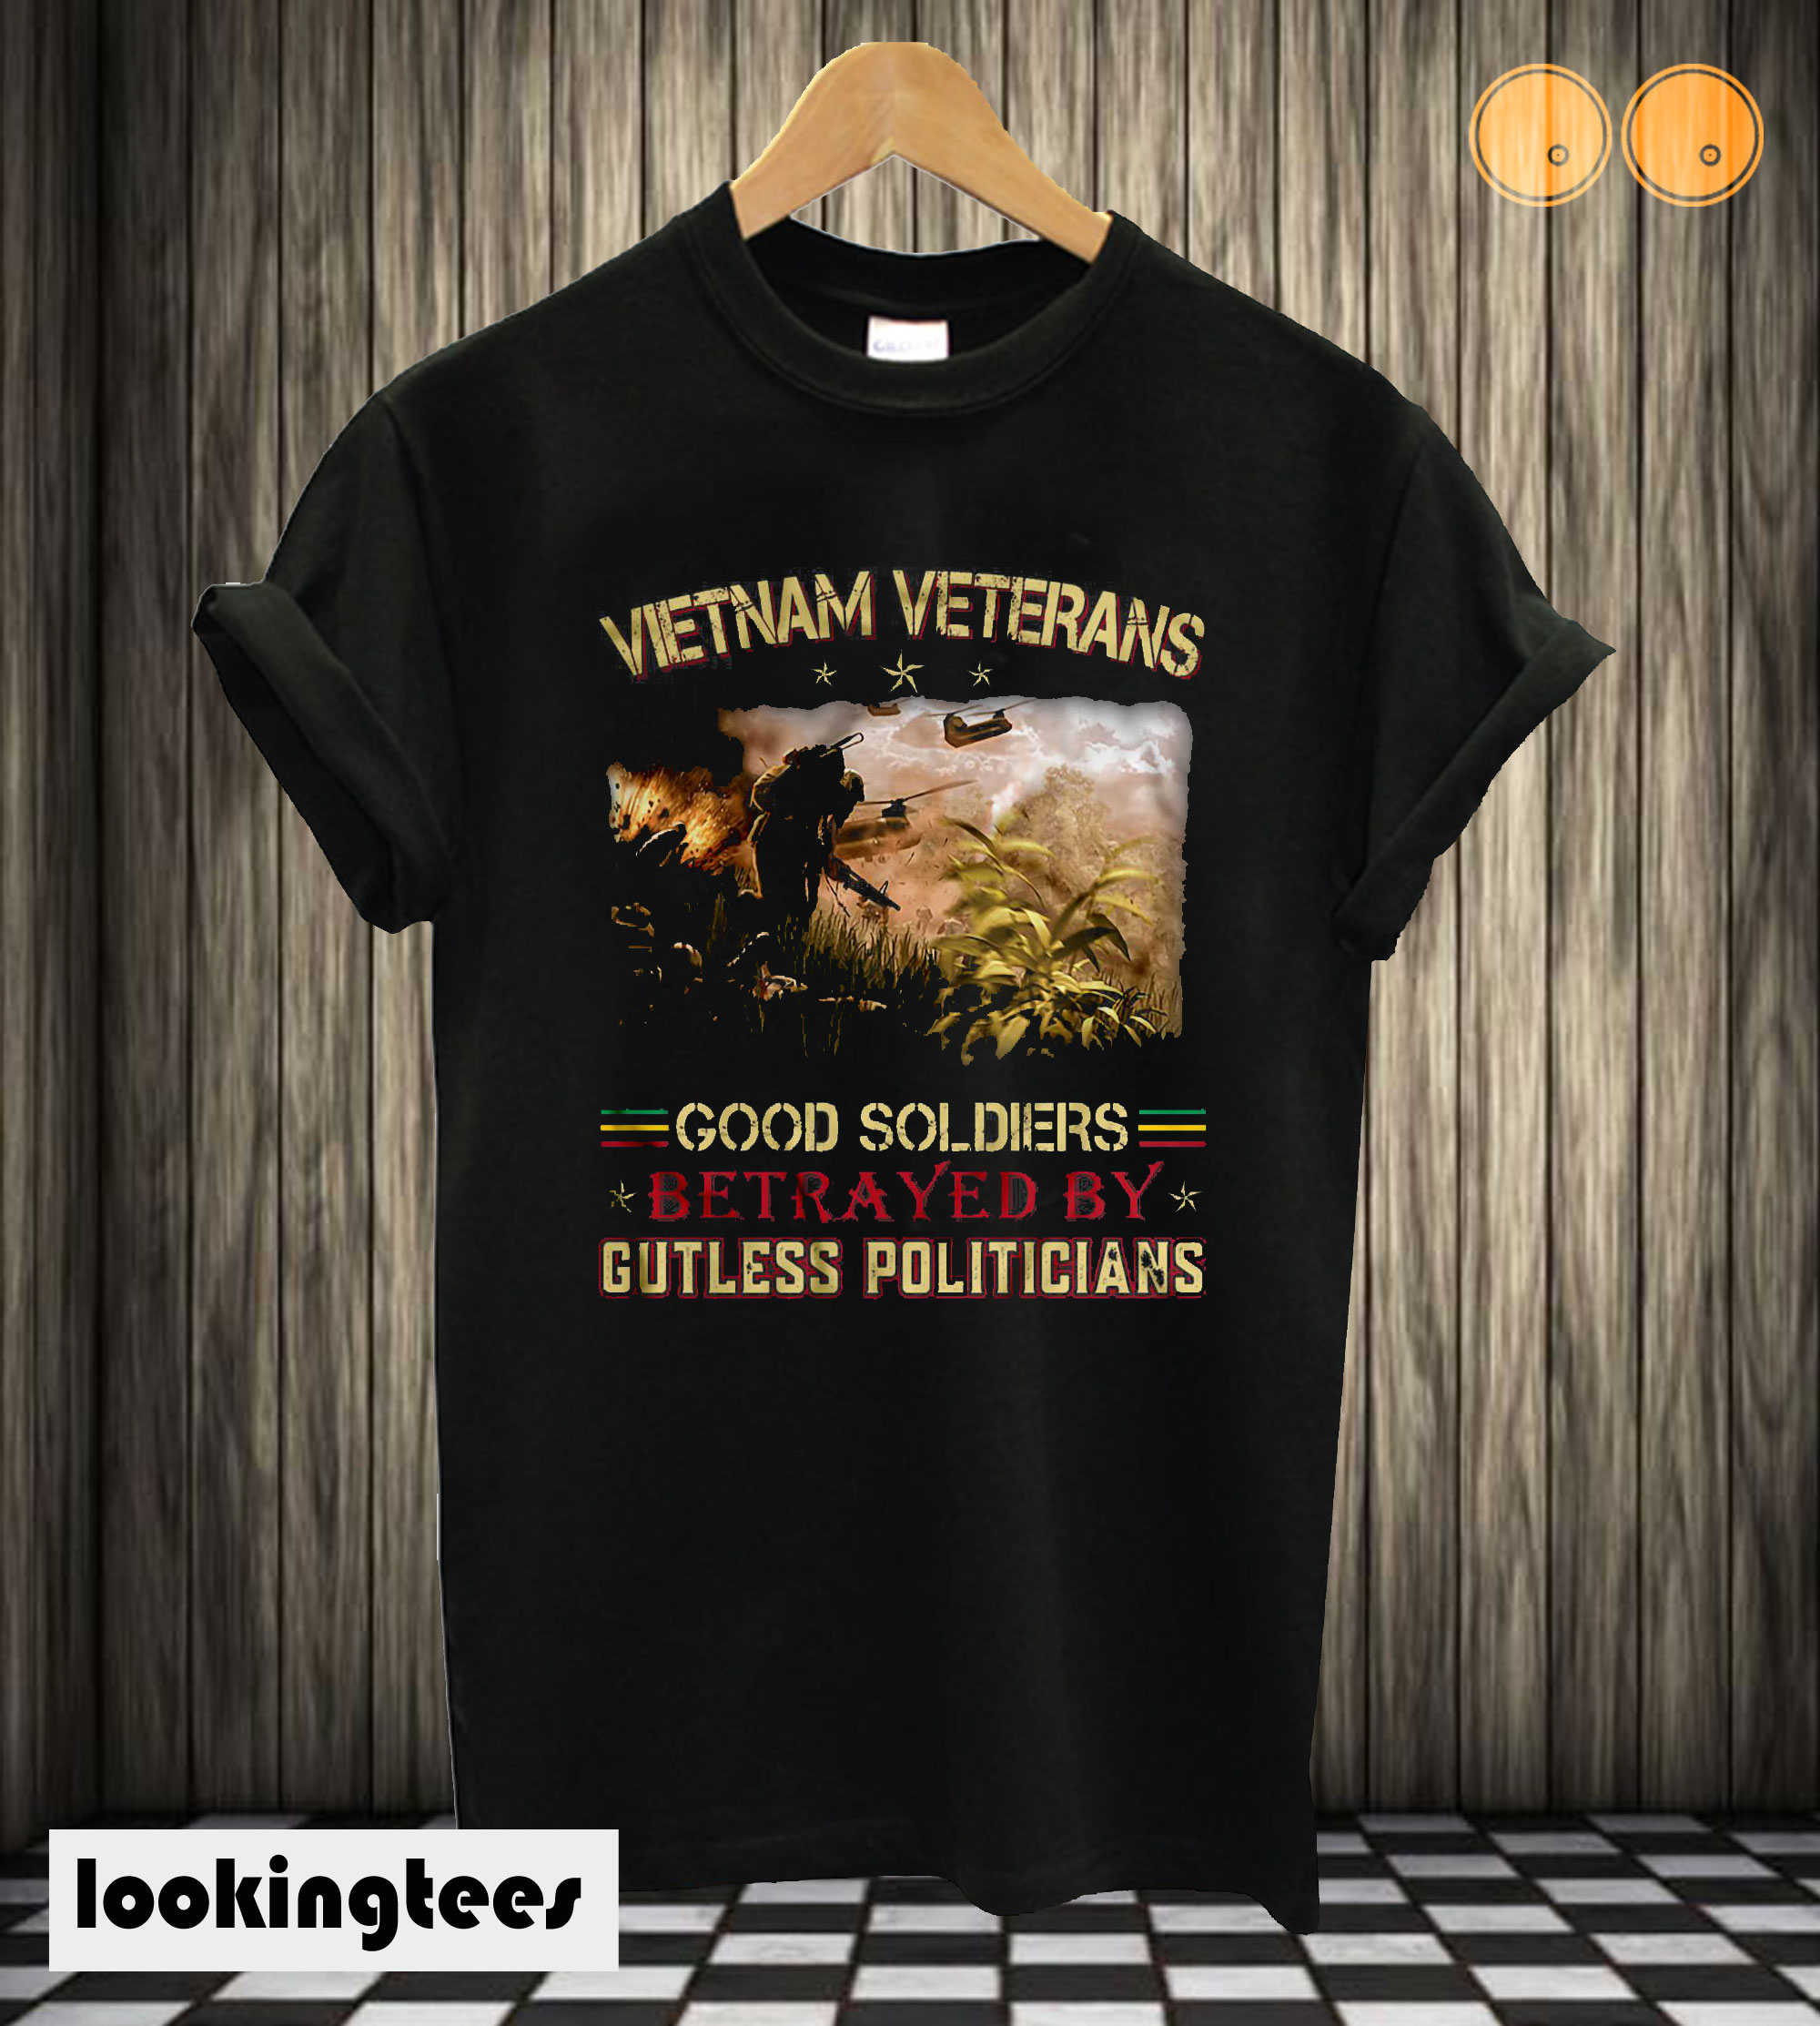 Vietnam Veterans Good Soldiers Betrayed By Gutless Politicians T shirt ...